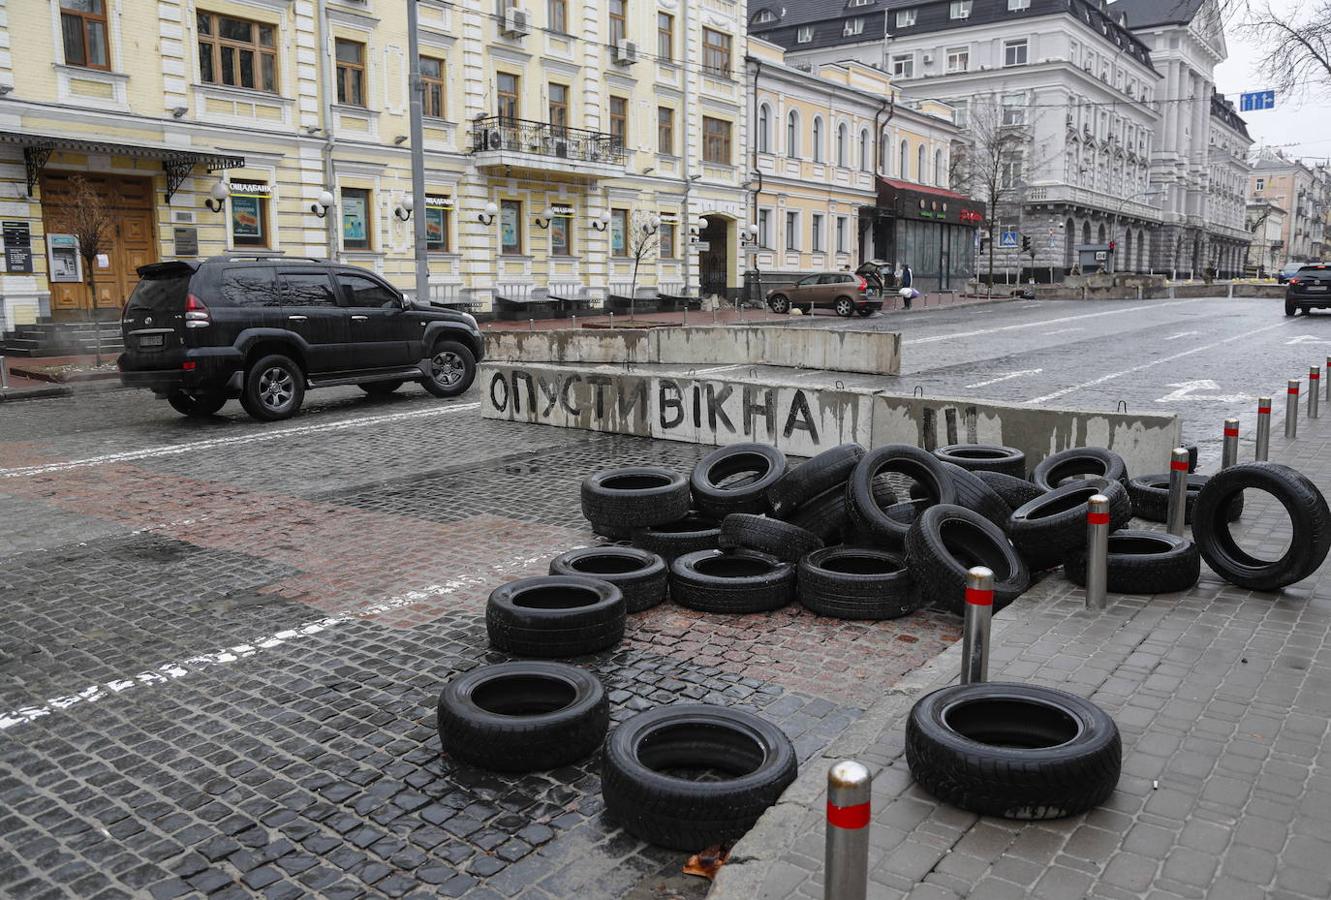 La ciudad de Kiev se prepara ante un posible ataque ruso creando barricadas en las calles para impedir el avance de los tanques